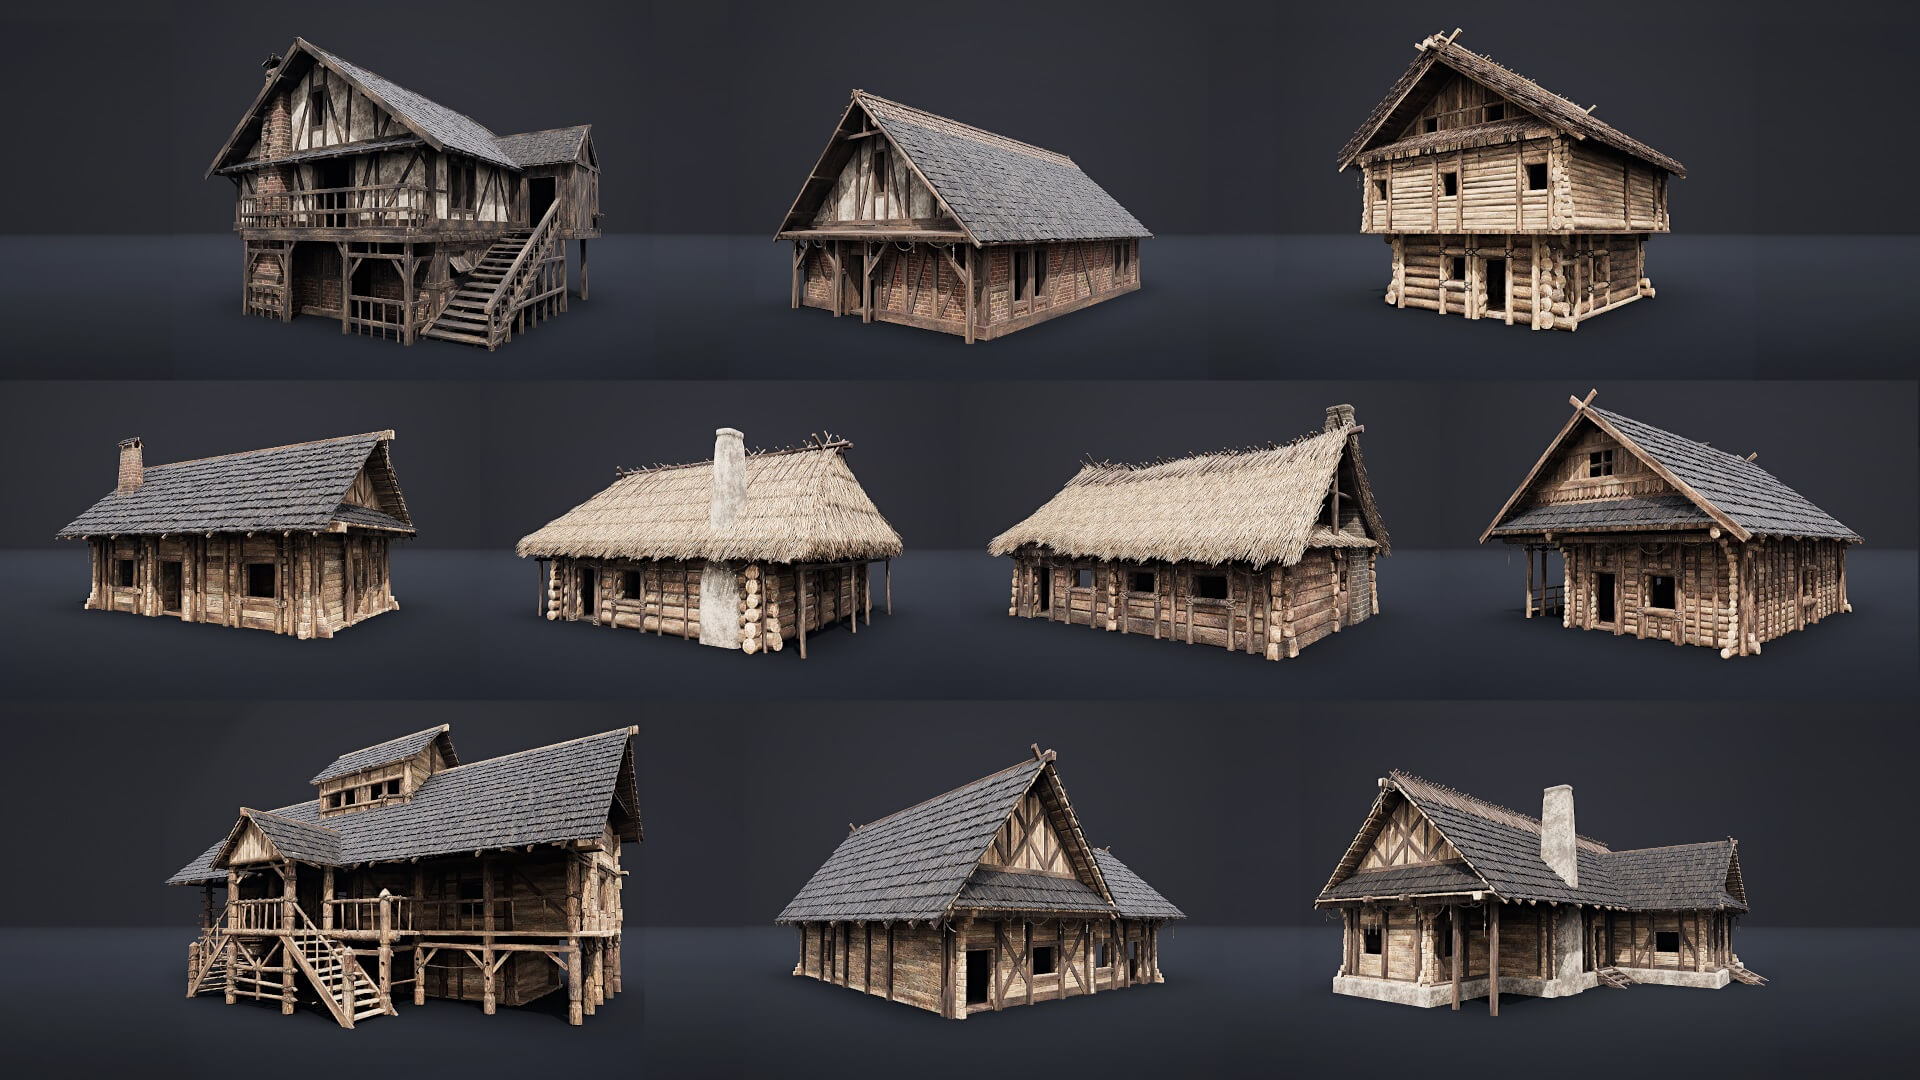 【UE4/5】可进入的中世纪房屋 – Enterable Medieval Houses and Cottages – v1